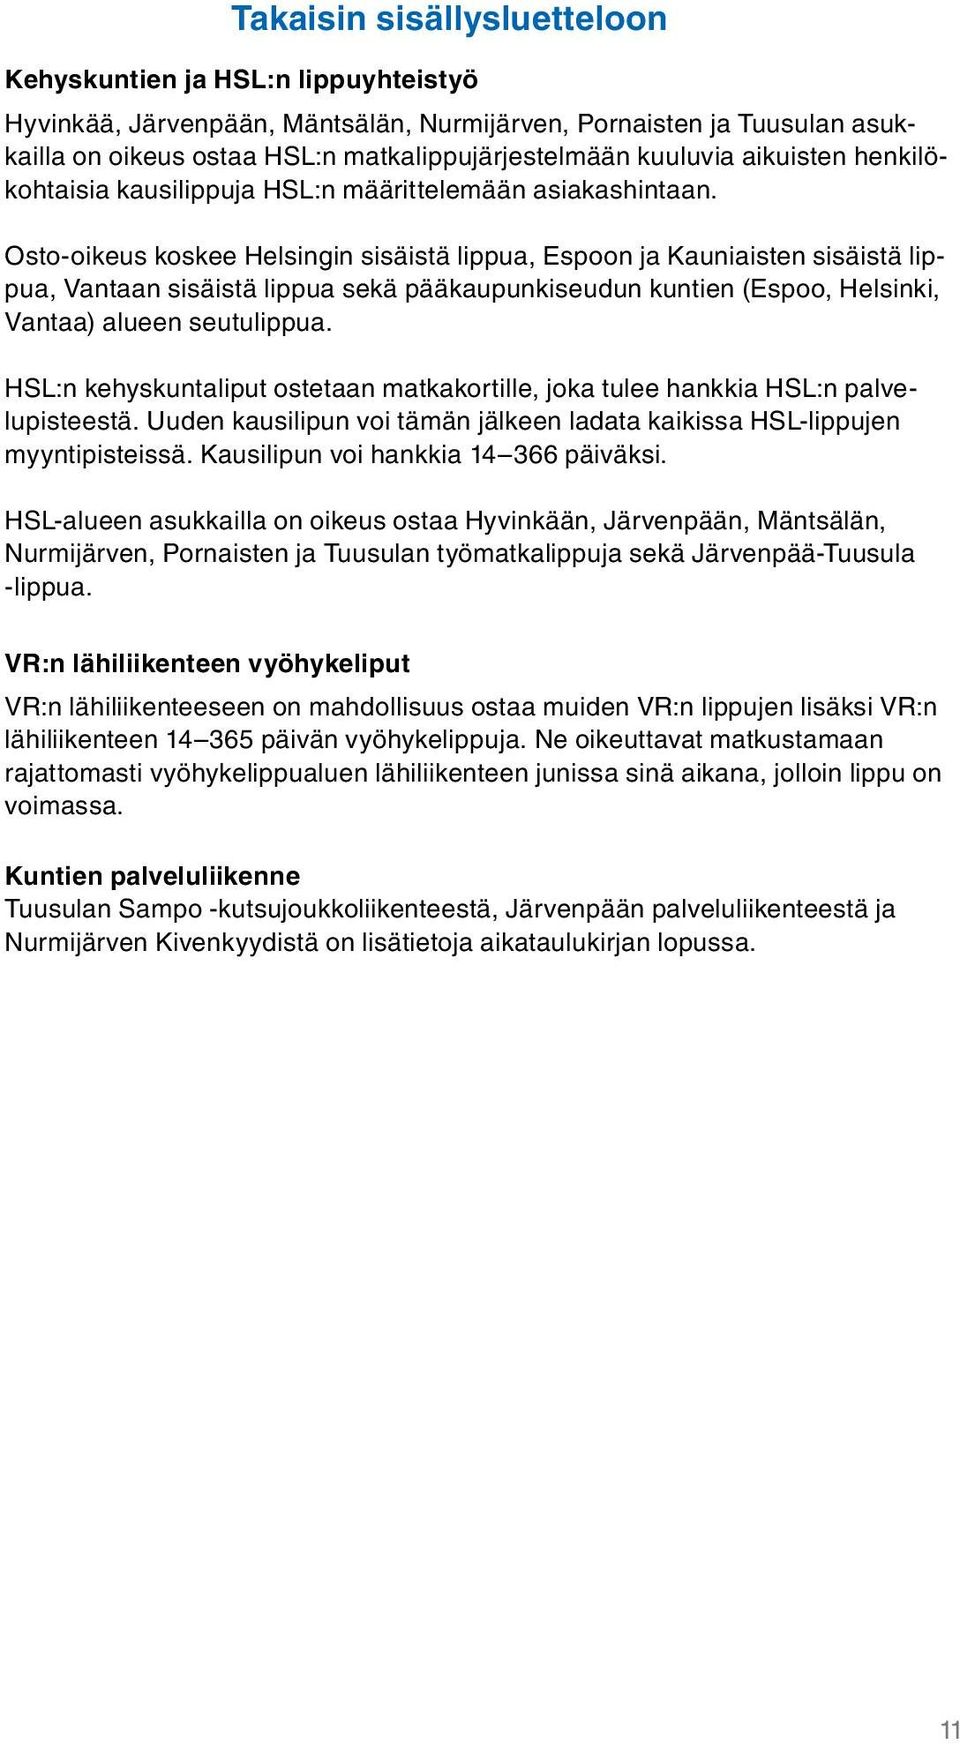 Osto-oikeus koskee Helsingin sisäistä lippua, Espoon ja Kauniaisten sisäistä lippua, Vantaan sisäistä lippua sekä pääkaupunkiseudun kuntien (Espoo, Helsinki, Vantaa) alueen seutulippua.